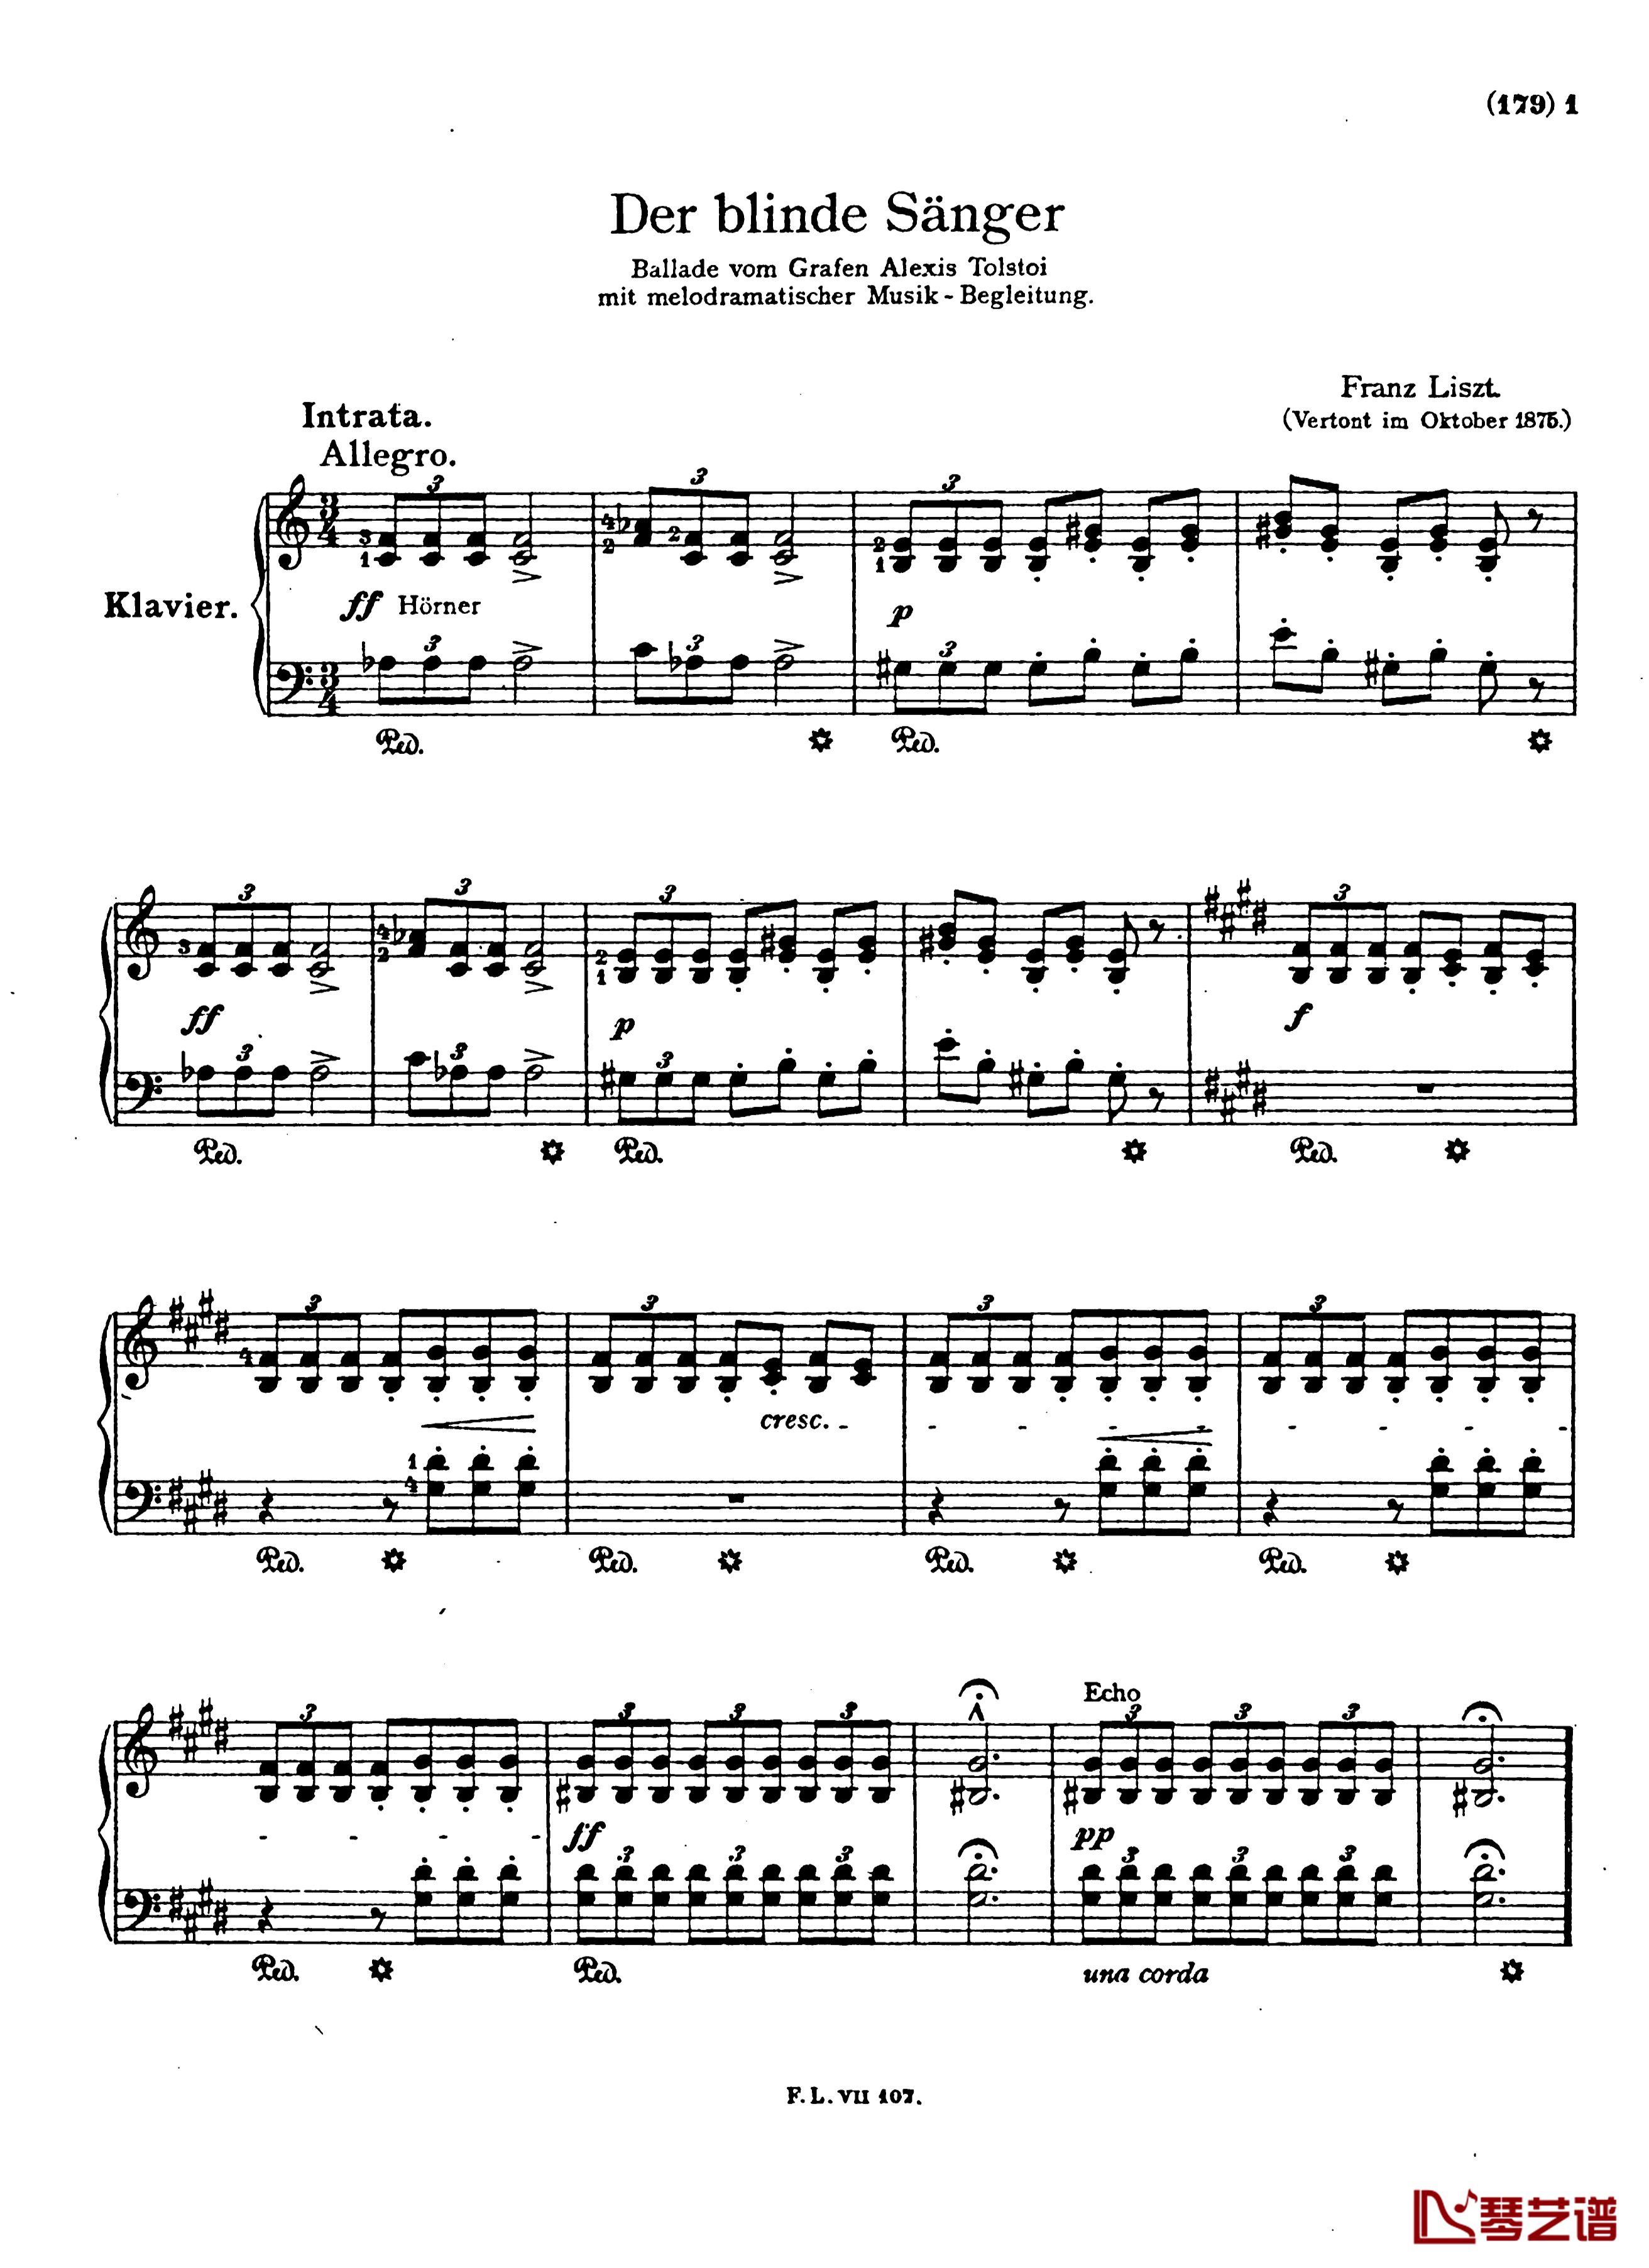  盲人歌手S.350钢琴谱-配乐诗朗诵-李斯特1